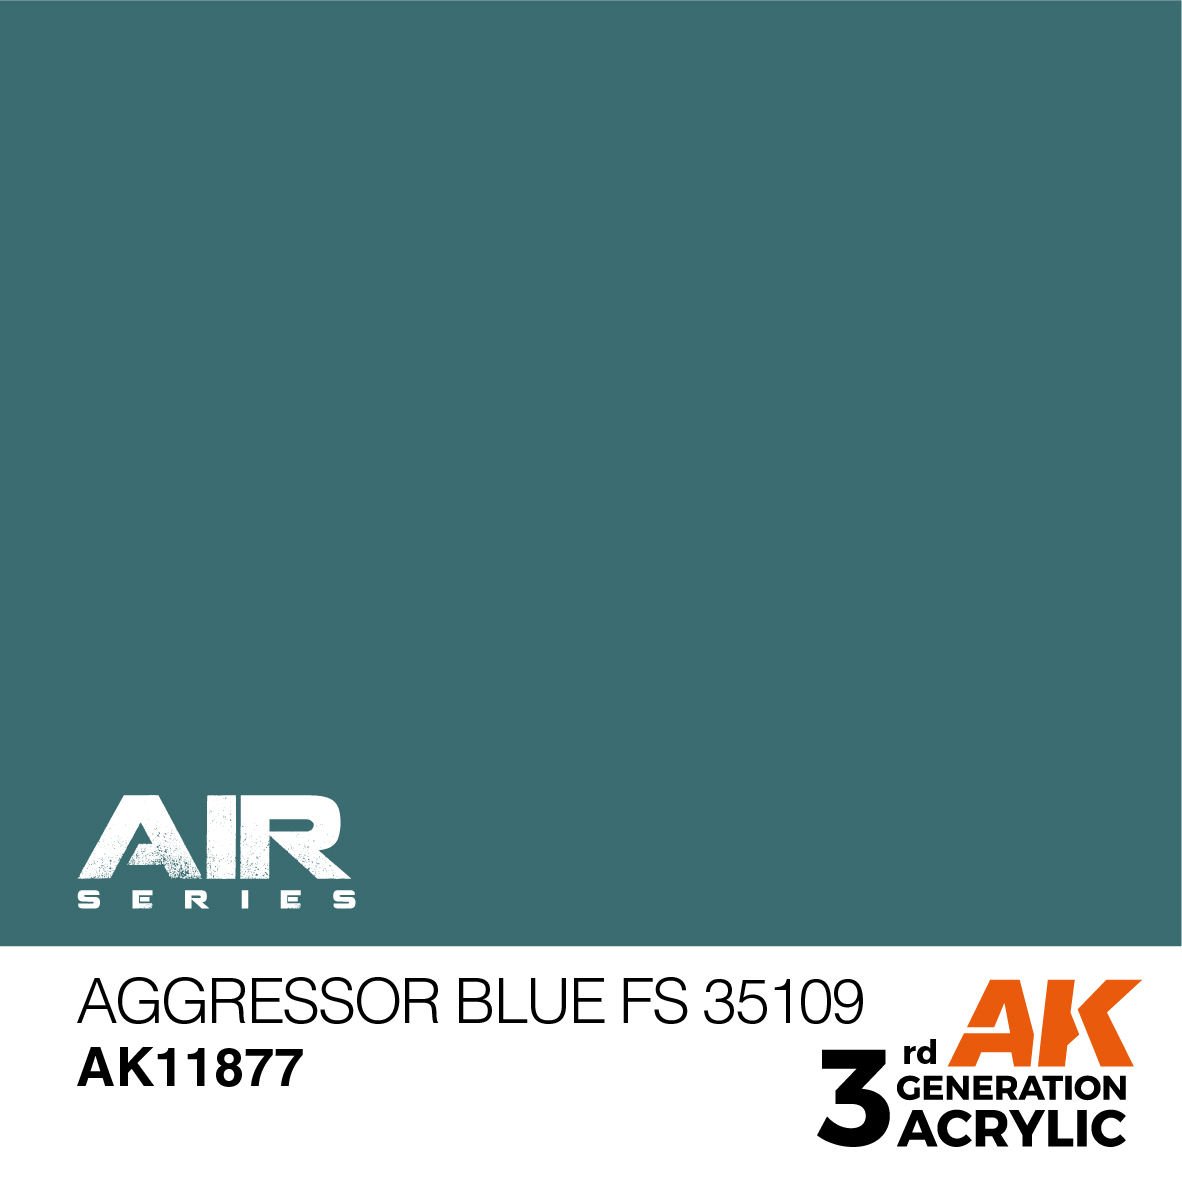 Aggressor Blue FS 35109 – AIR